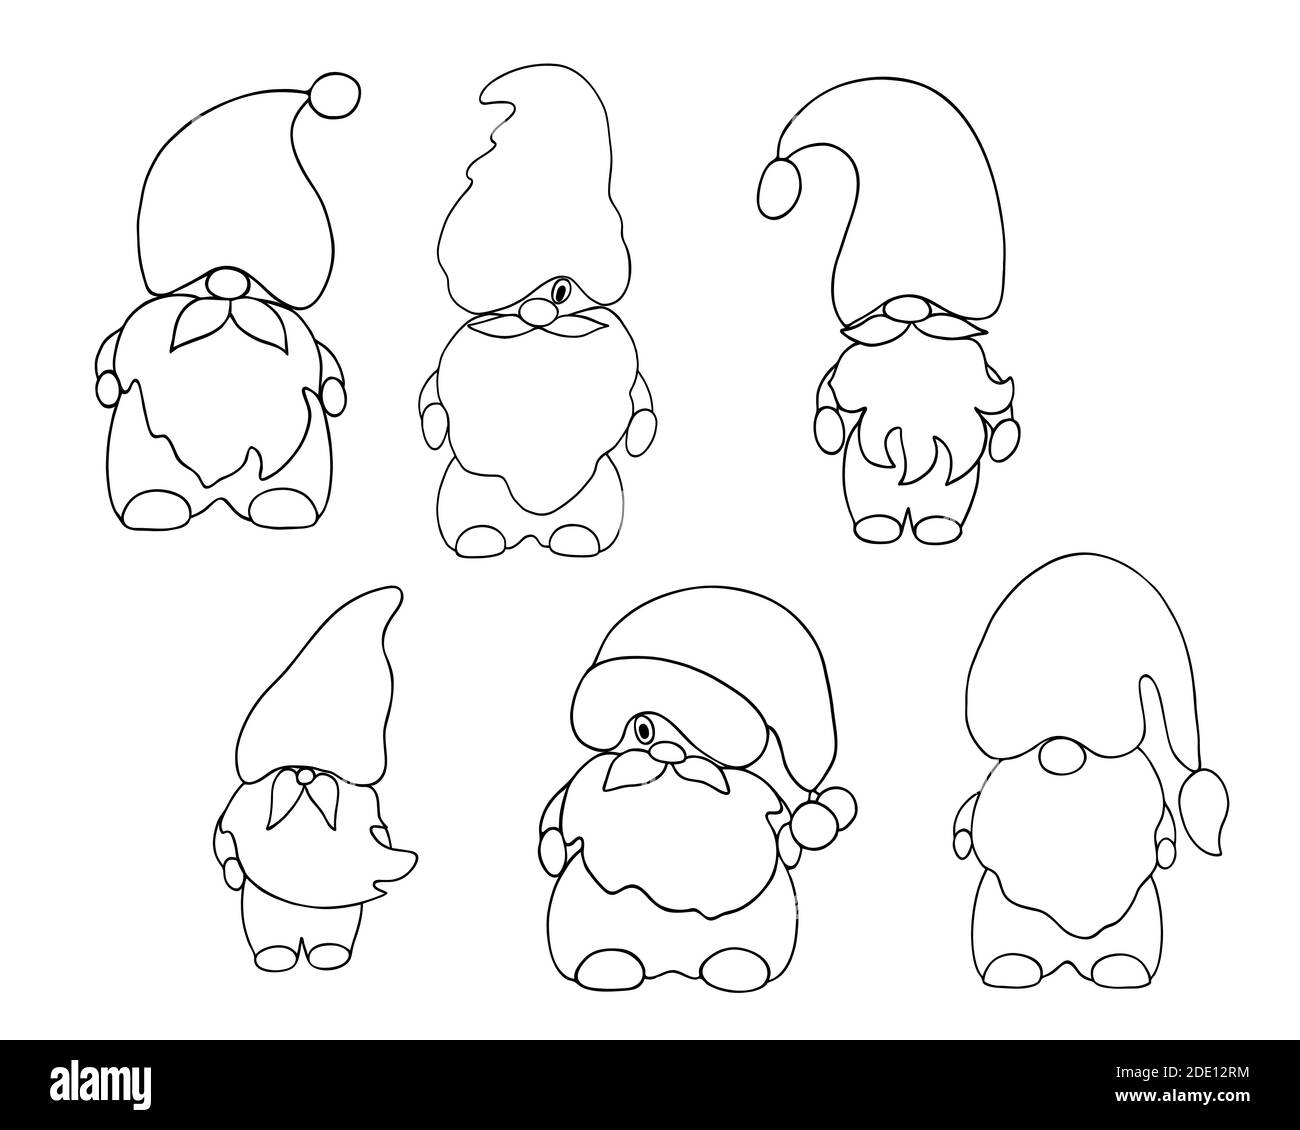 Mignon contour gnome petit Noël fantaisie créature simple dessin main  dessin vectoriel illustration, plat pour les cartes de voeux de vacances  d'hiver, invitations, bannières, aide de conte de fées de Père Noël